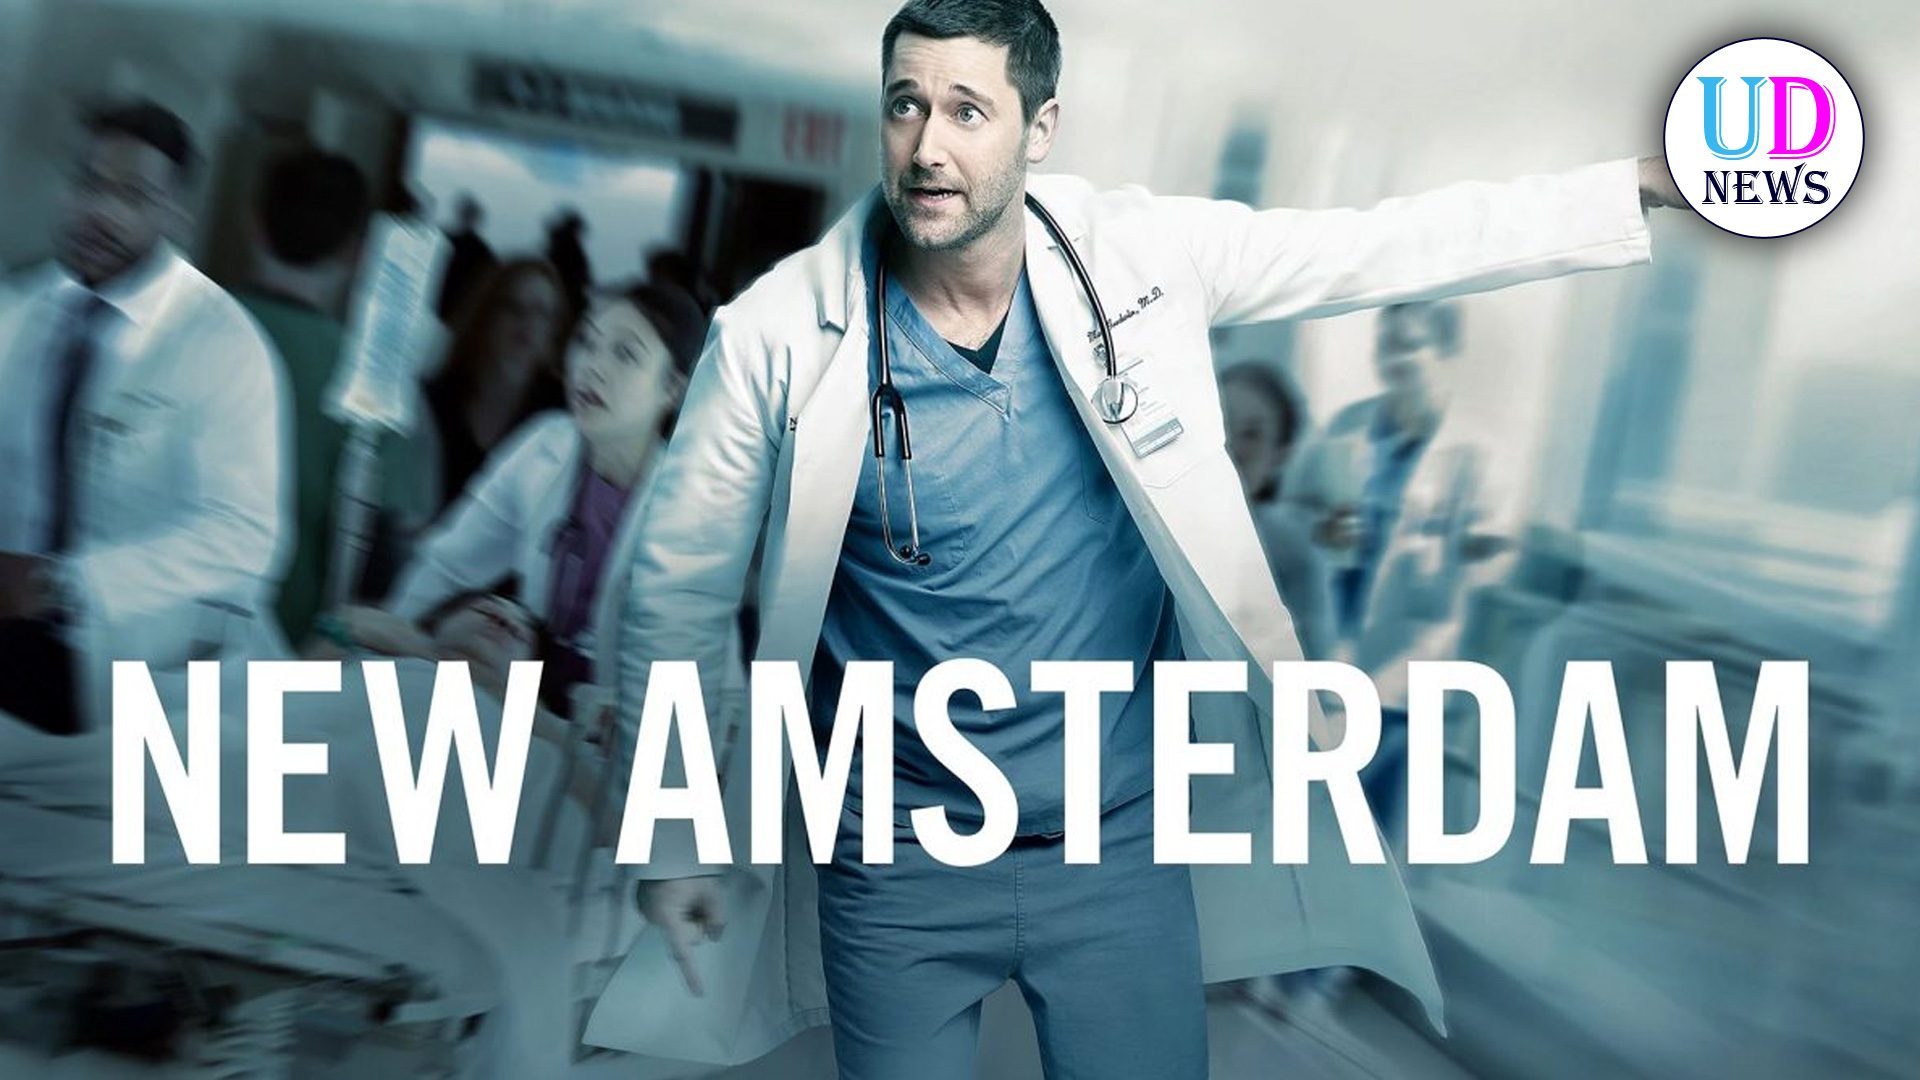 New Amsterdam la Nuova Serie TV Medical Drama di Canale Cinque! UD News